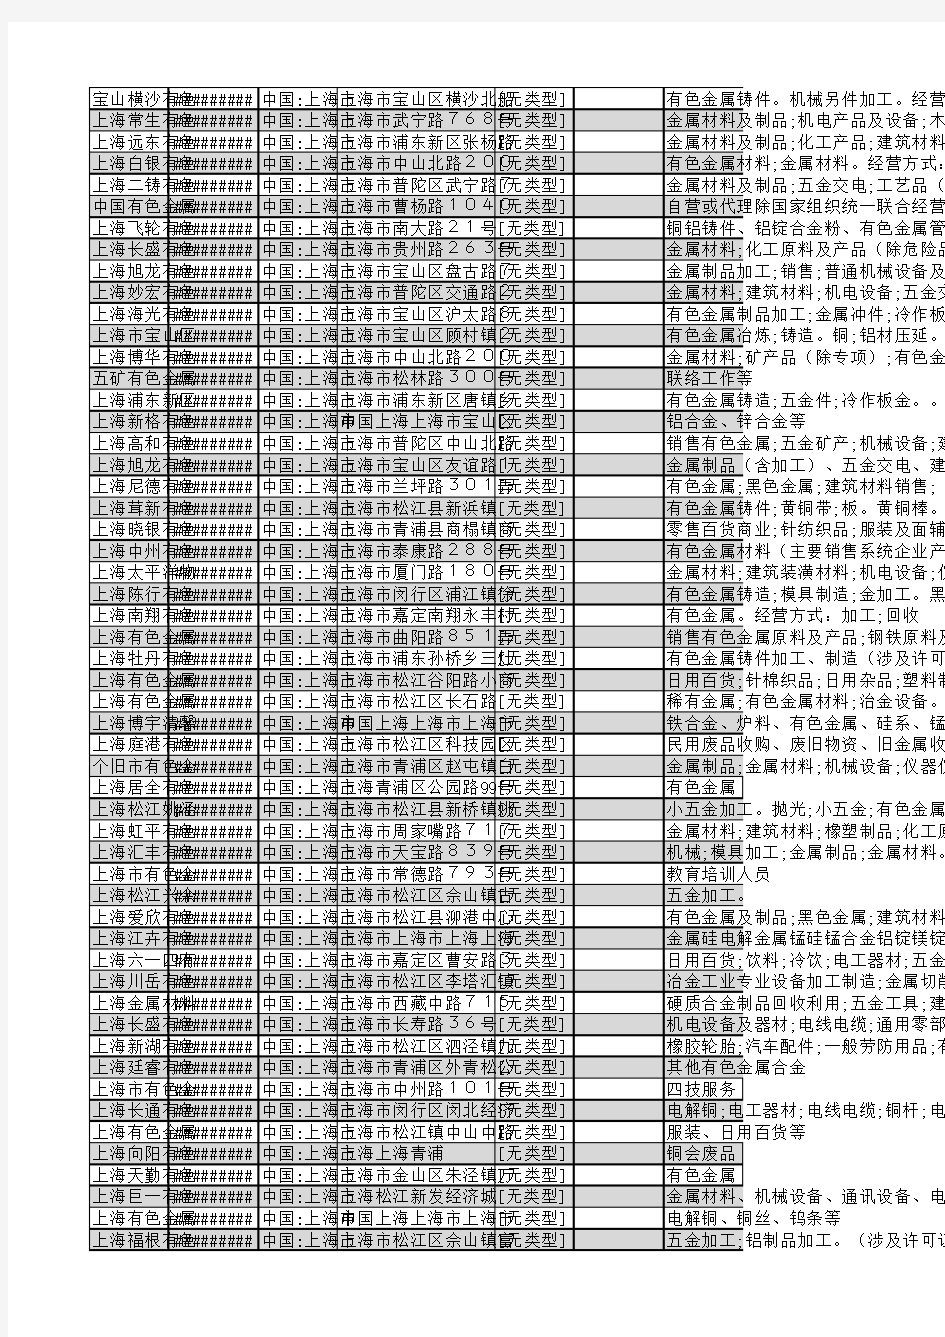 2018年上海市有色金属行业企业名录1820家